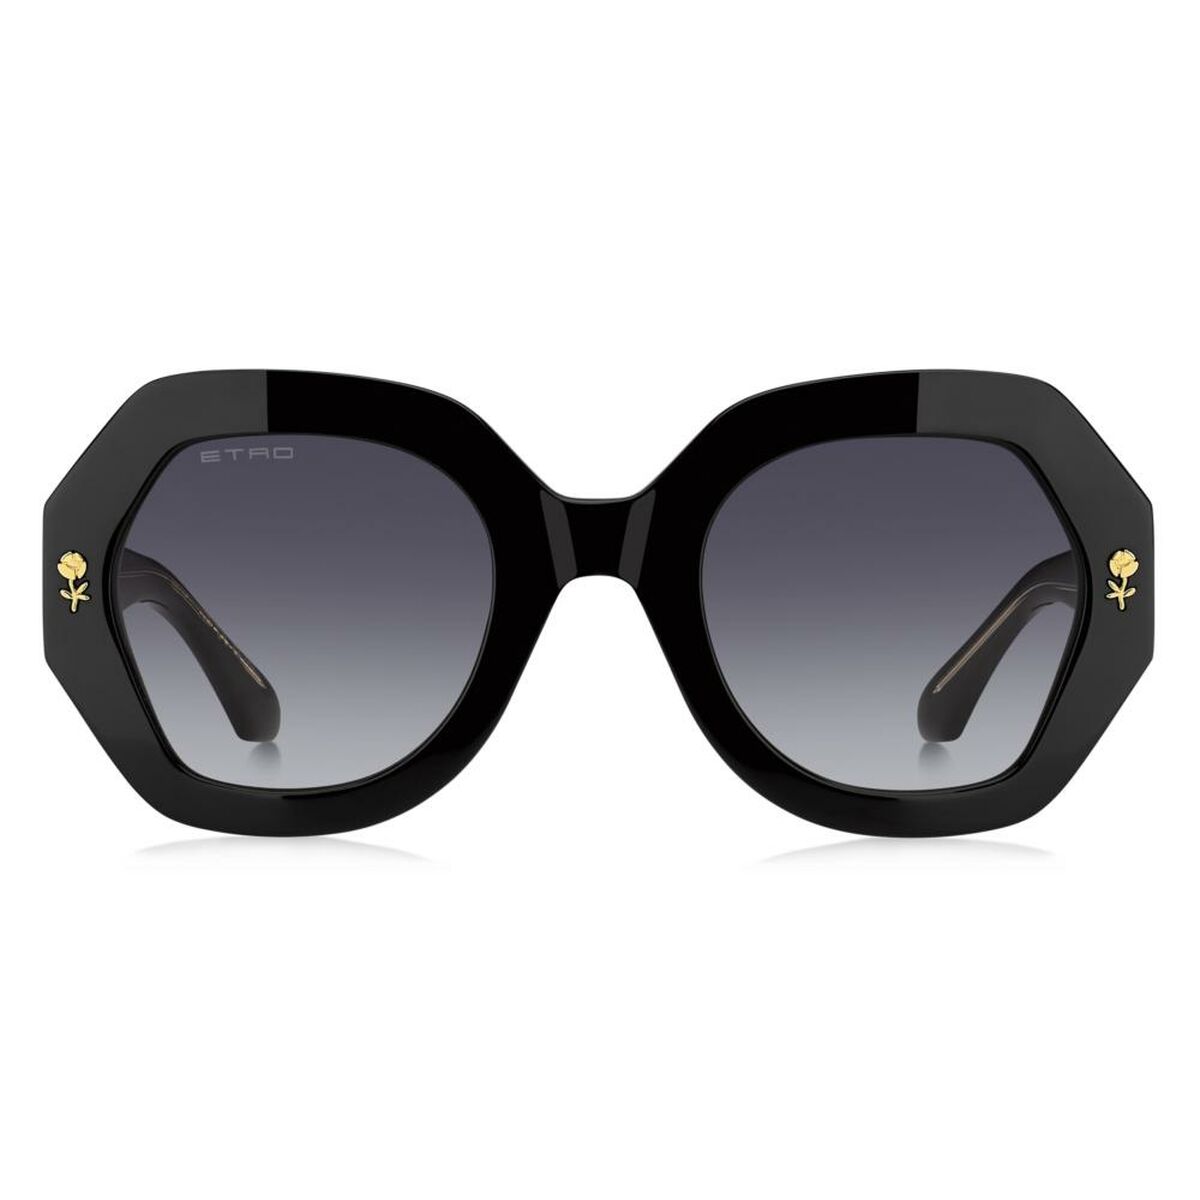 Kaufe Damensonnenbrille Etro ETRO 0009_S bei AWK Flagship um € 233.00